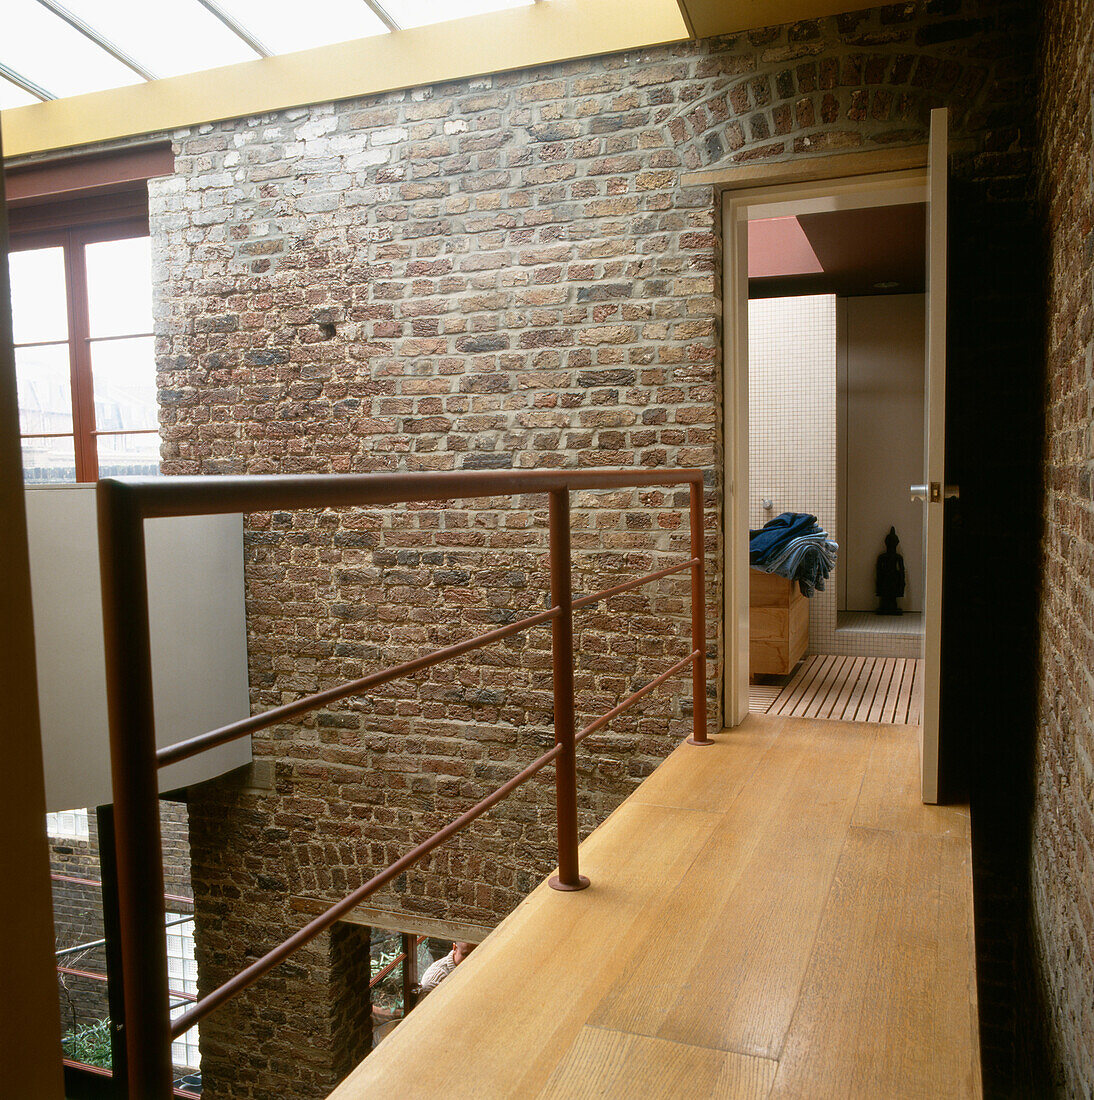 Blick in das Badezimmer vom Zwischengeschoss mit freiliegender Ziegelwand und Glasdach